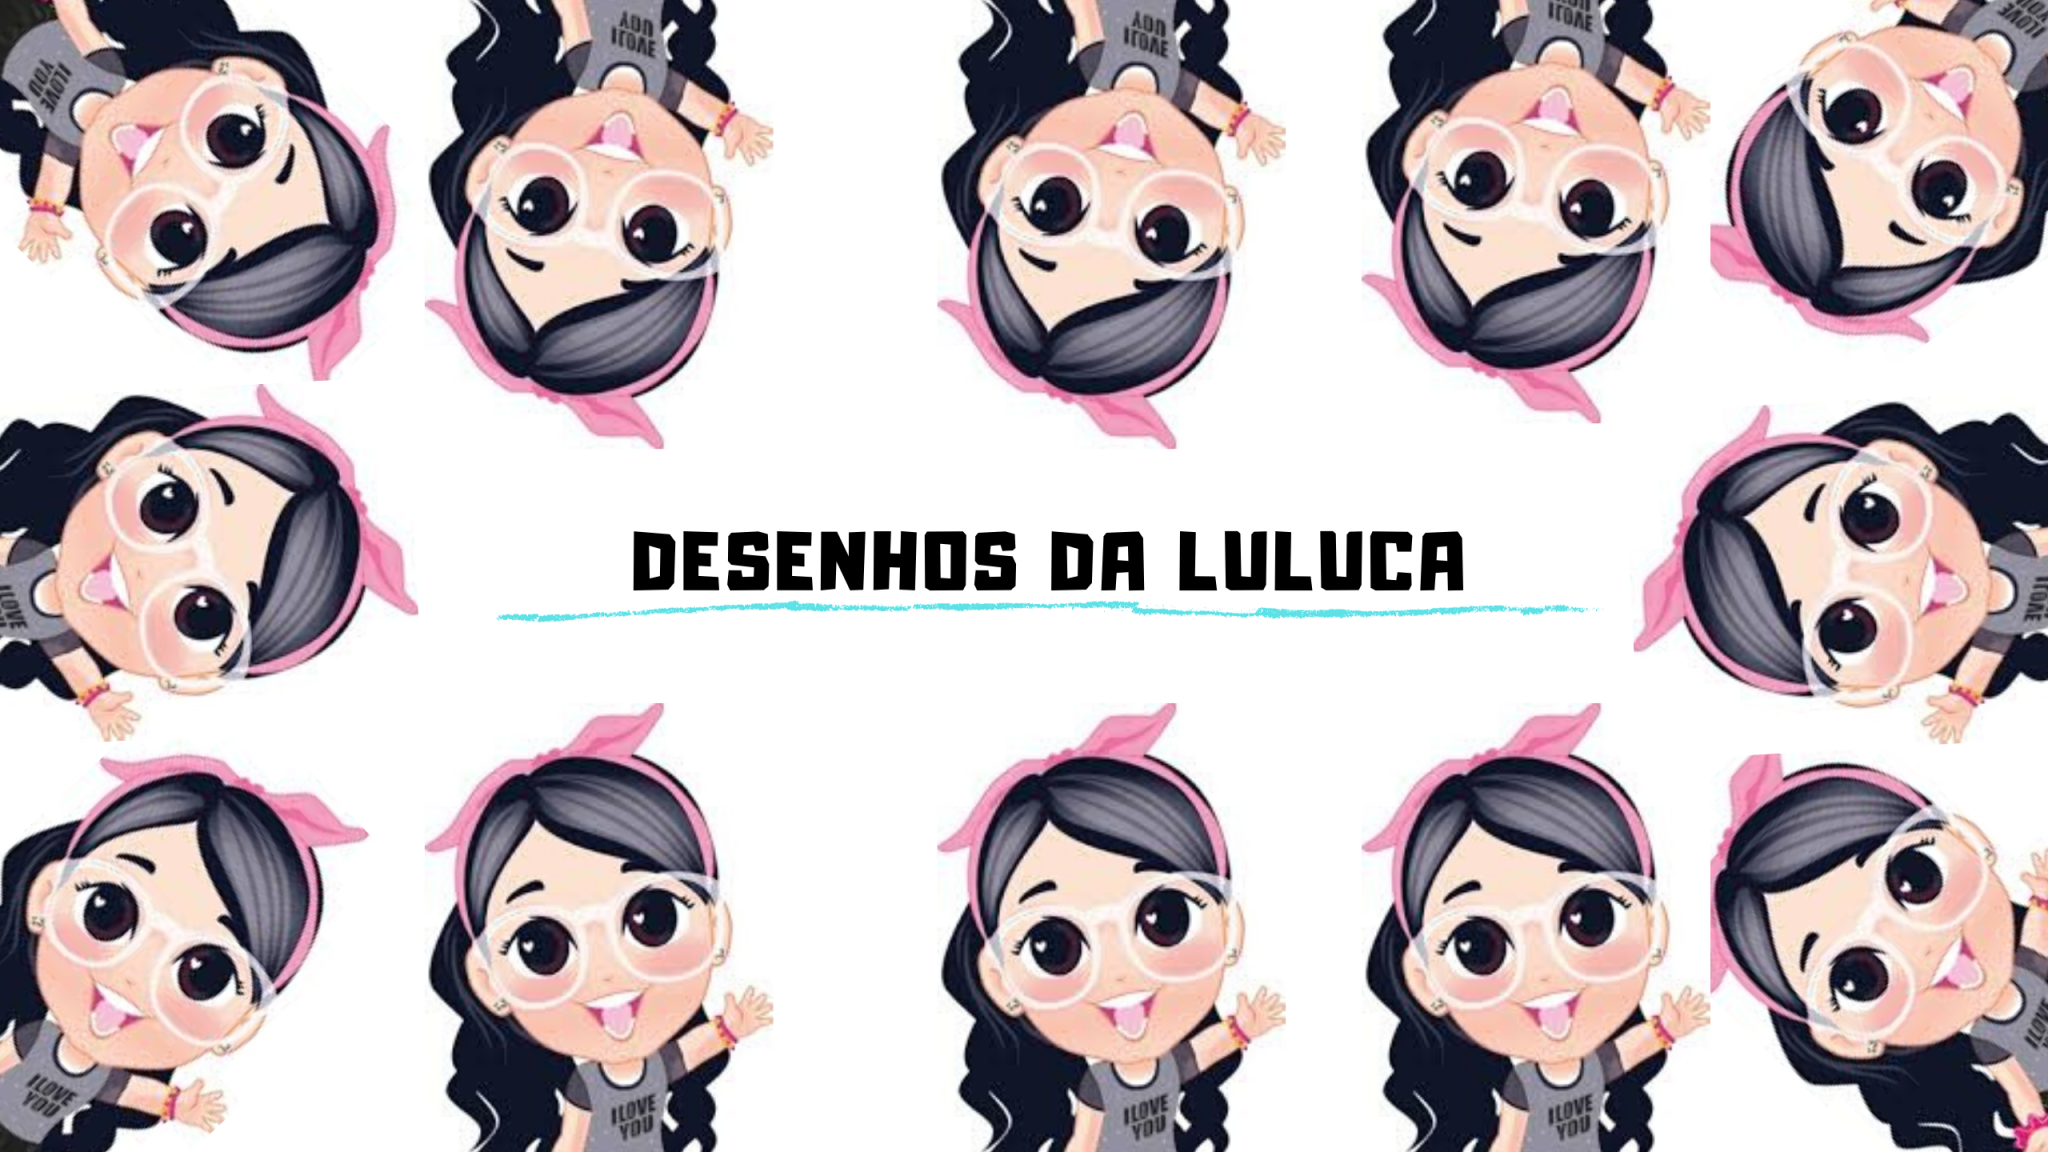 Desenhos Da Luluca on Tumblr